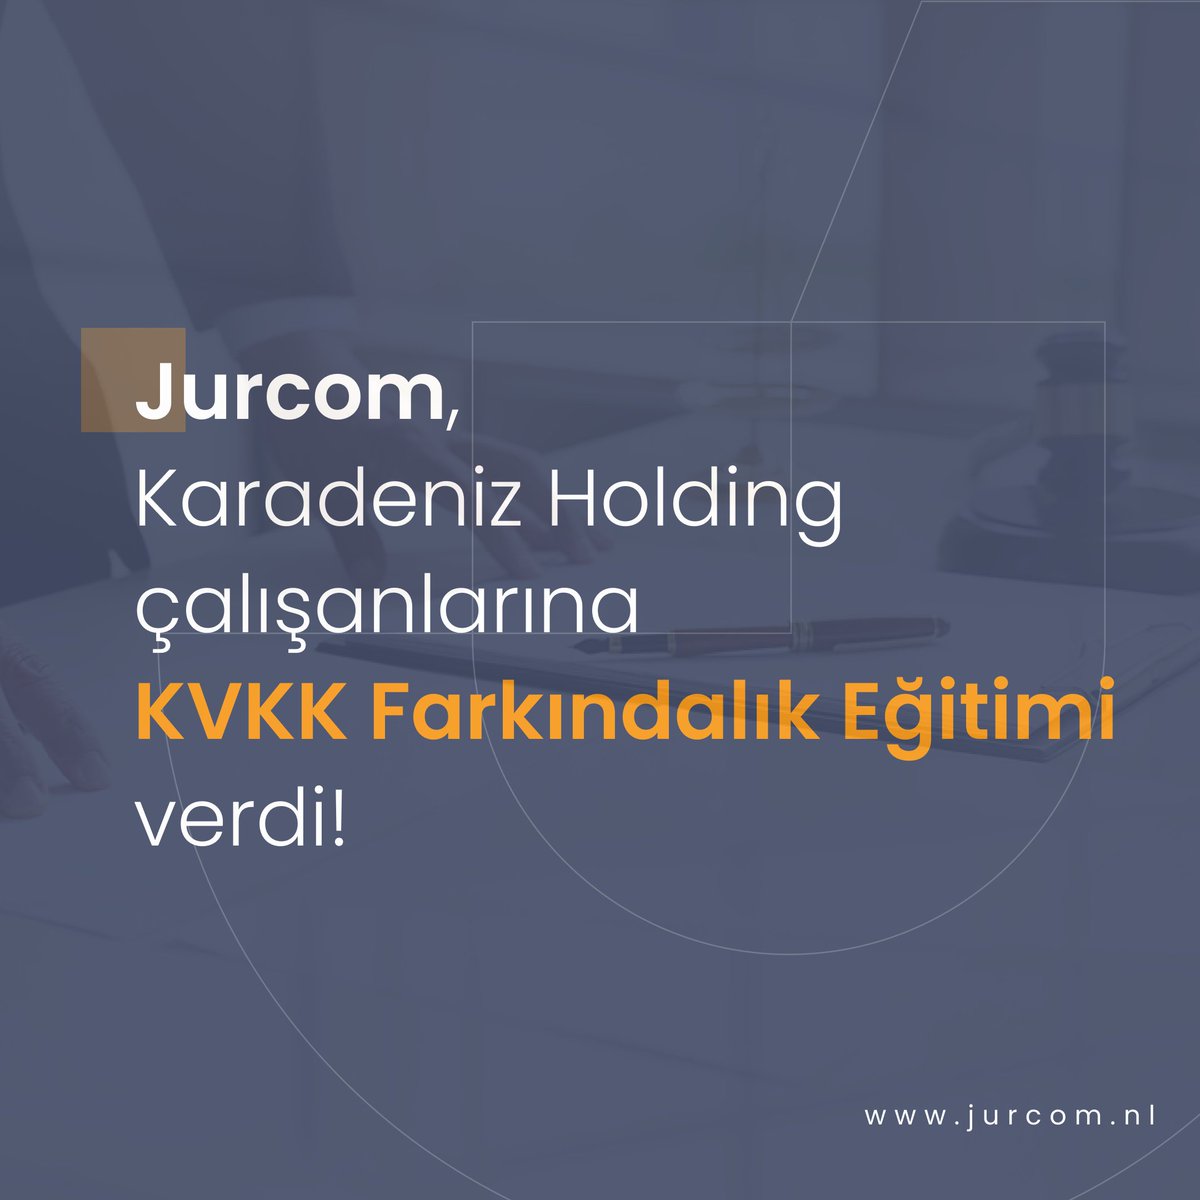 Jurcom, kurumsal uyum eğitimlerine hız kesmeden devam ediyor.
 
Son olarak değerli müşterimiz Karadeniz Holding çalışanlarına KVKK Farkındalık Eğitimi verdik.
 
#kvkk #eğitim #kurumsal #kurumsaleğitim #jurcom #uyumluluk #verikoruma #uyum #grc #mahremiyet